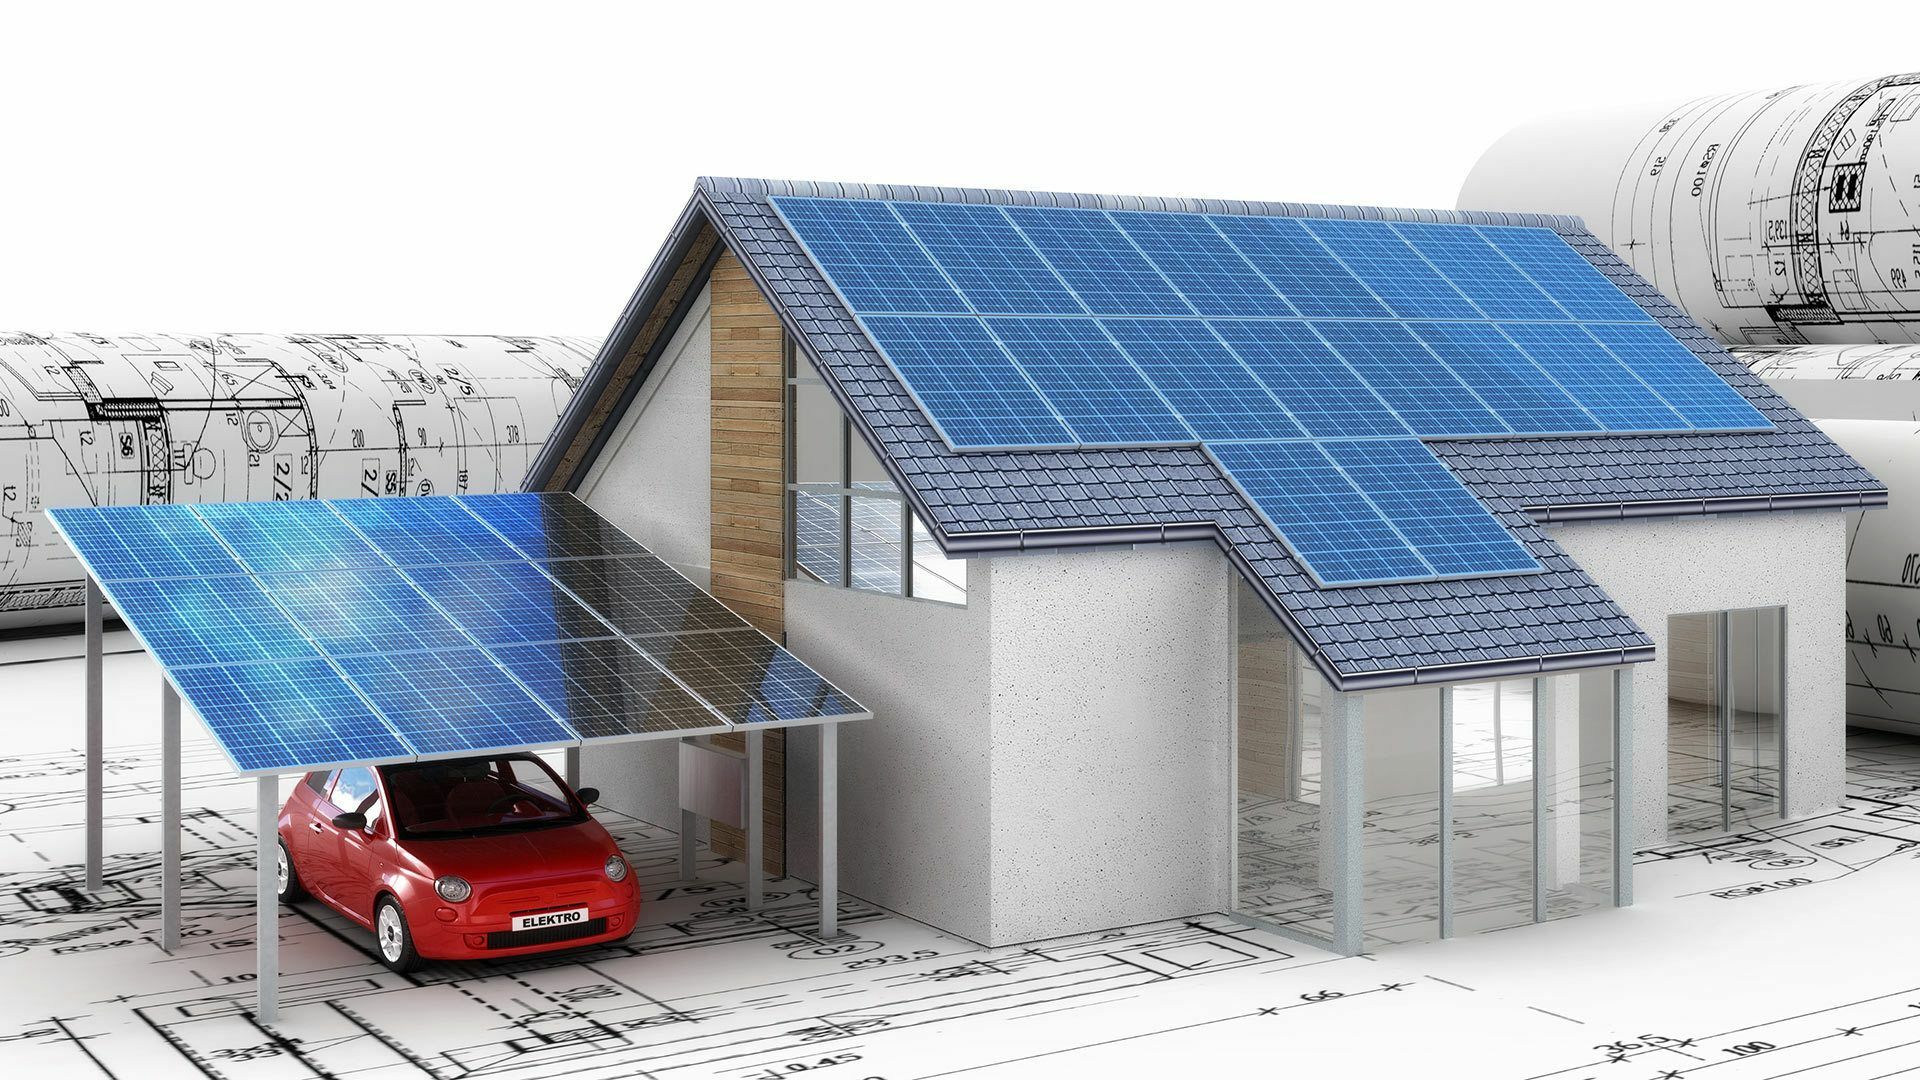 3D-Modell eines Einfamilienhauses und einer Garage mit Solardächern und einem Elektroauto auf Bauplänen